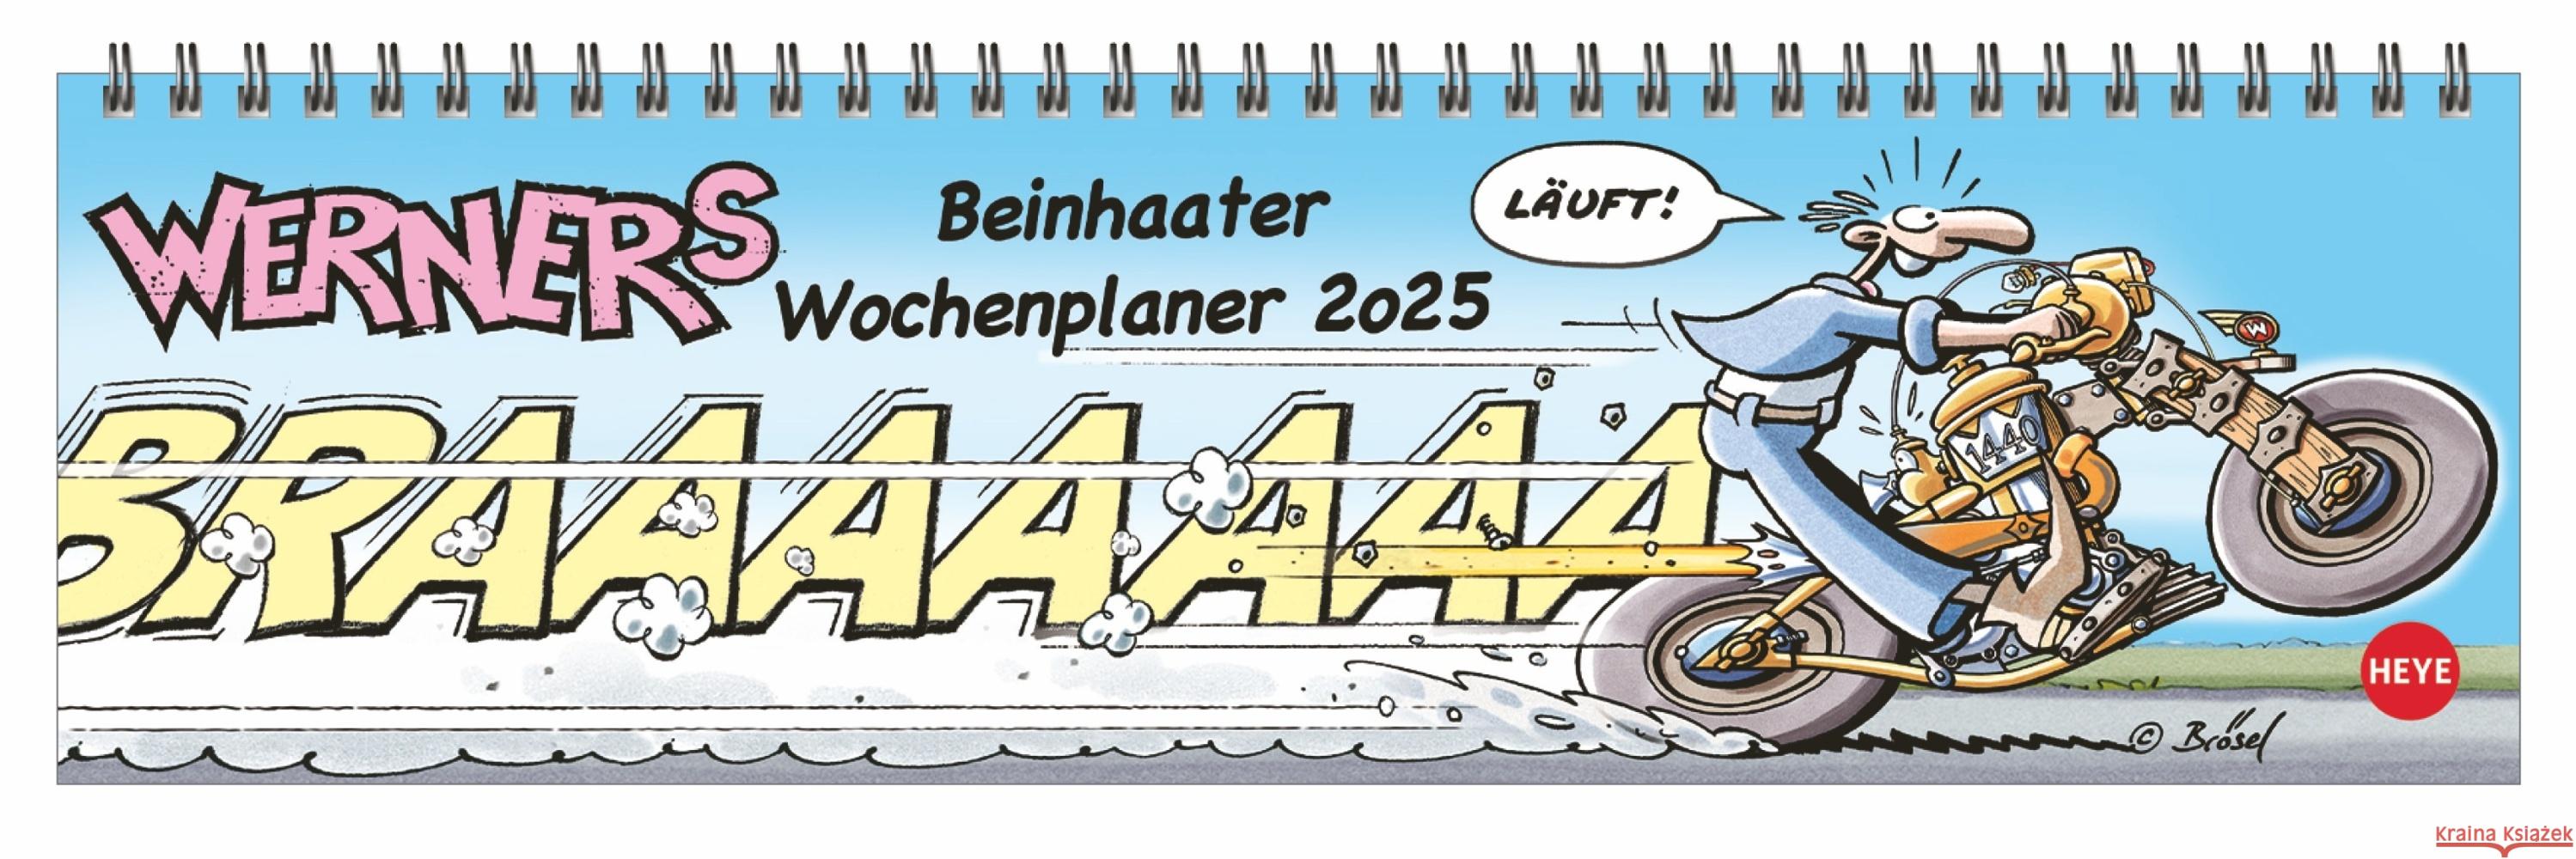 Werner Wochenquerplaner 2025 Feldmann, Rötger 9783756409174